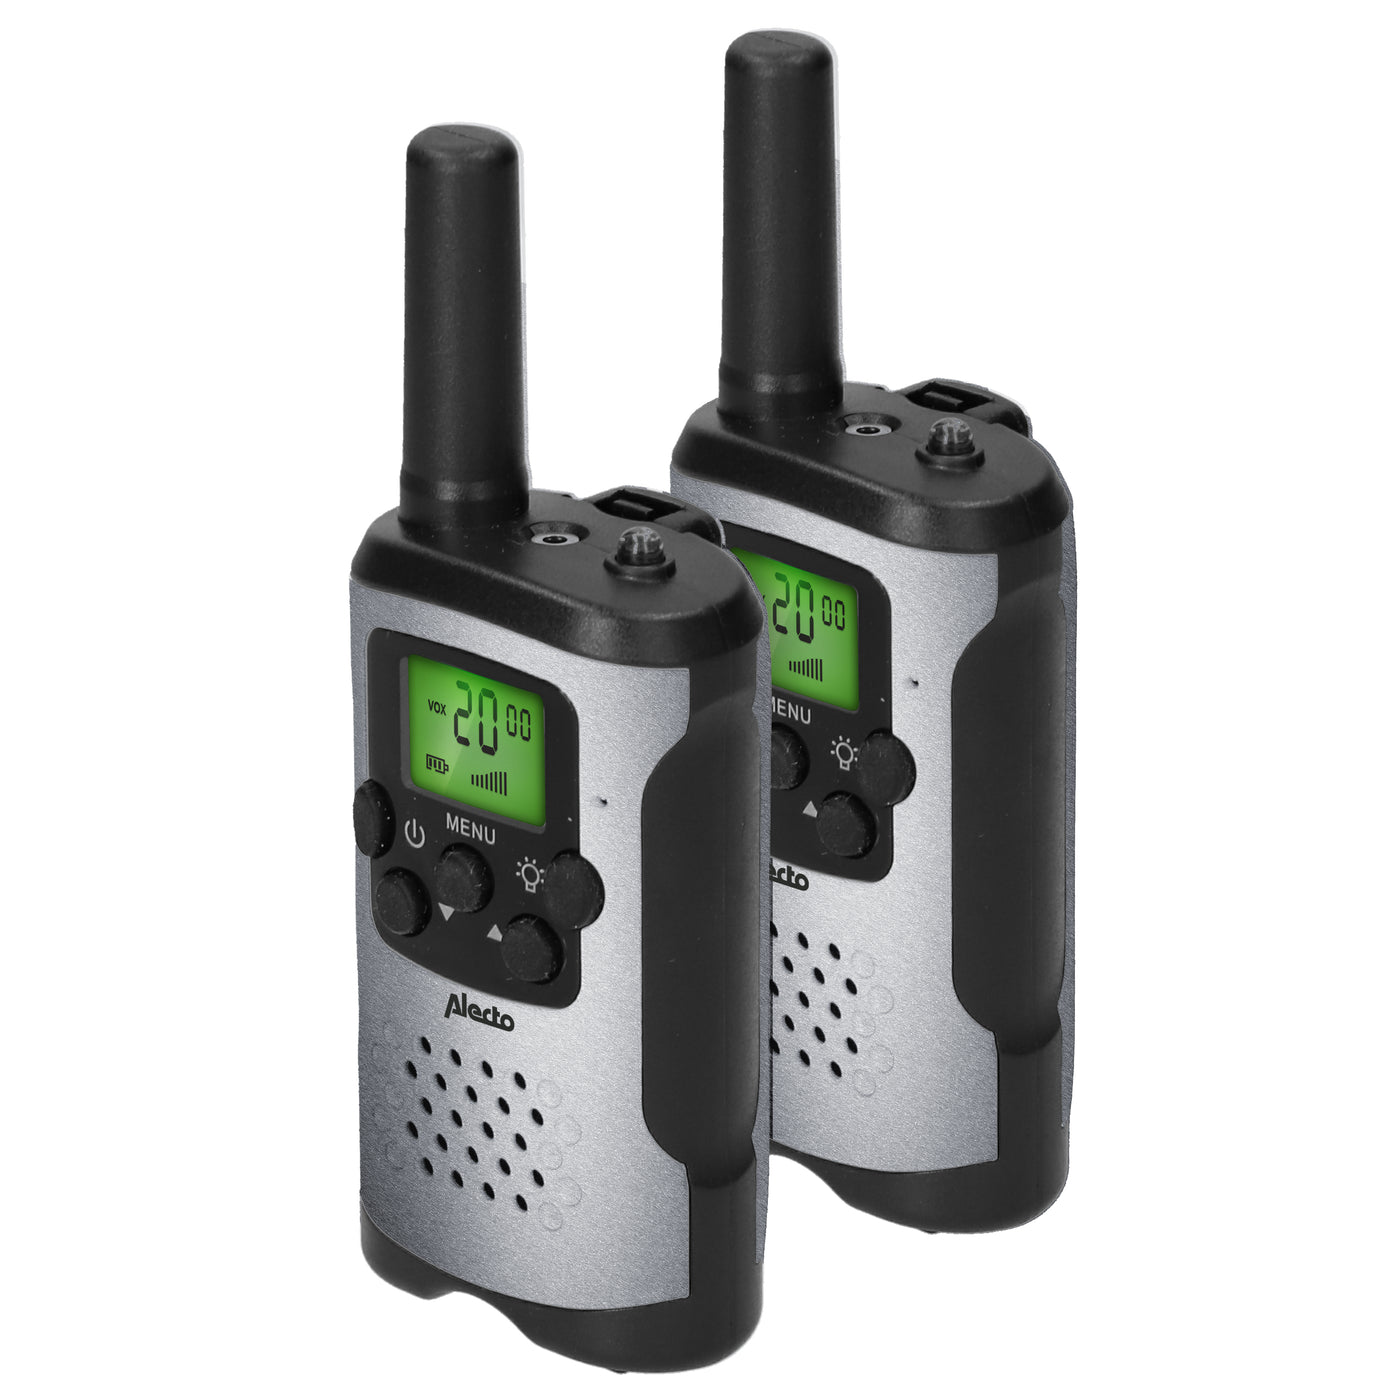 Alecto FR115GS - Set van twee walkie talkies voor kinderen - tot 5 kilometer bereik - grijs/zwart